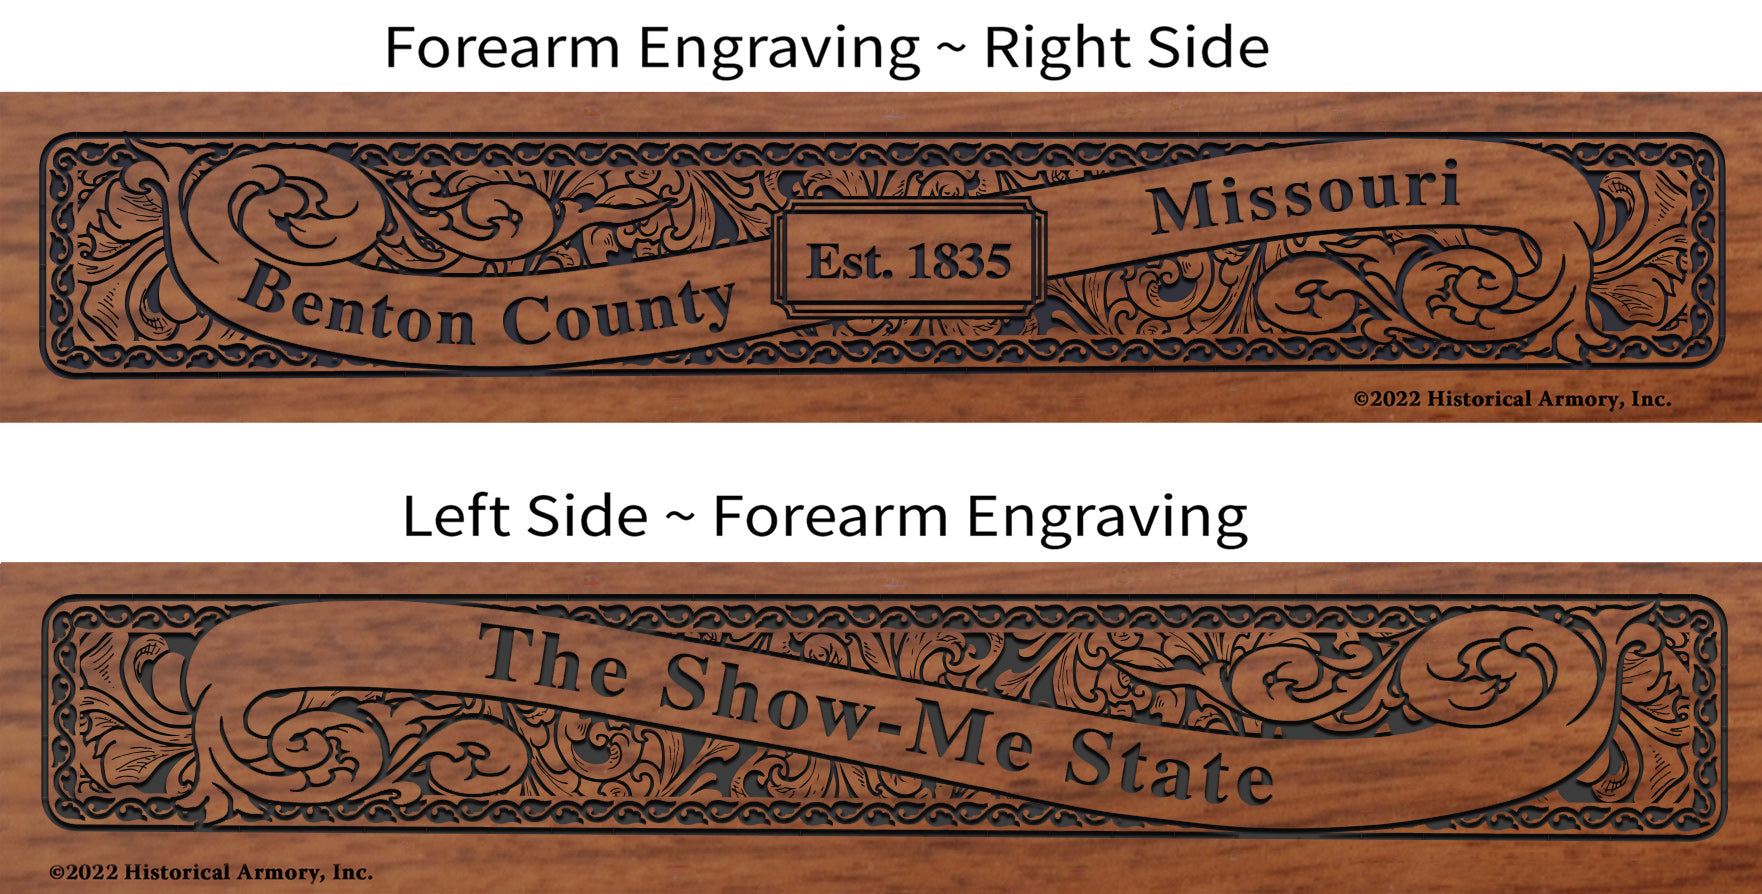 Benton County Missouri Engraved Rifle Forearm